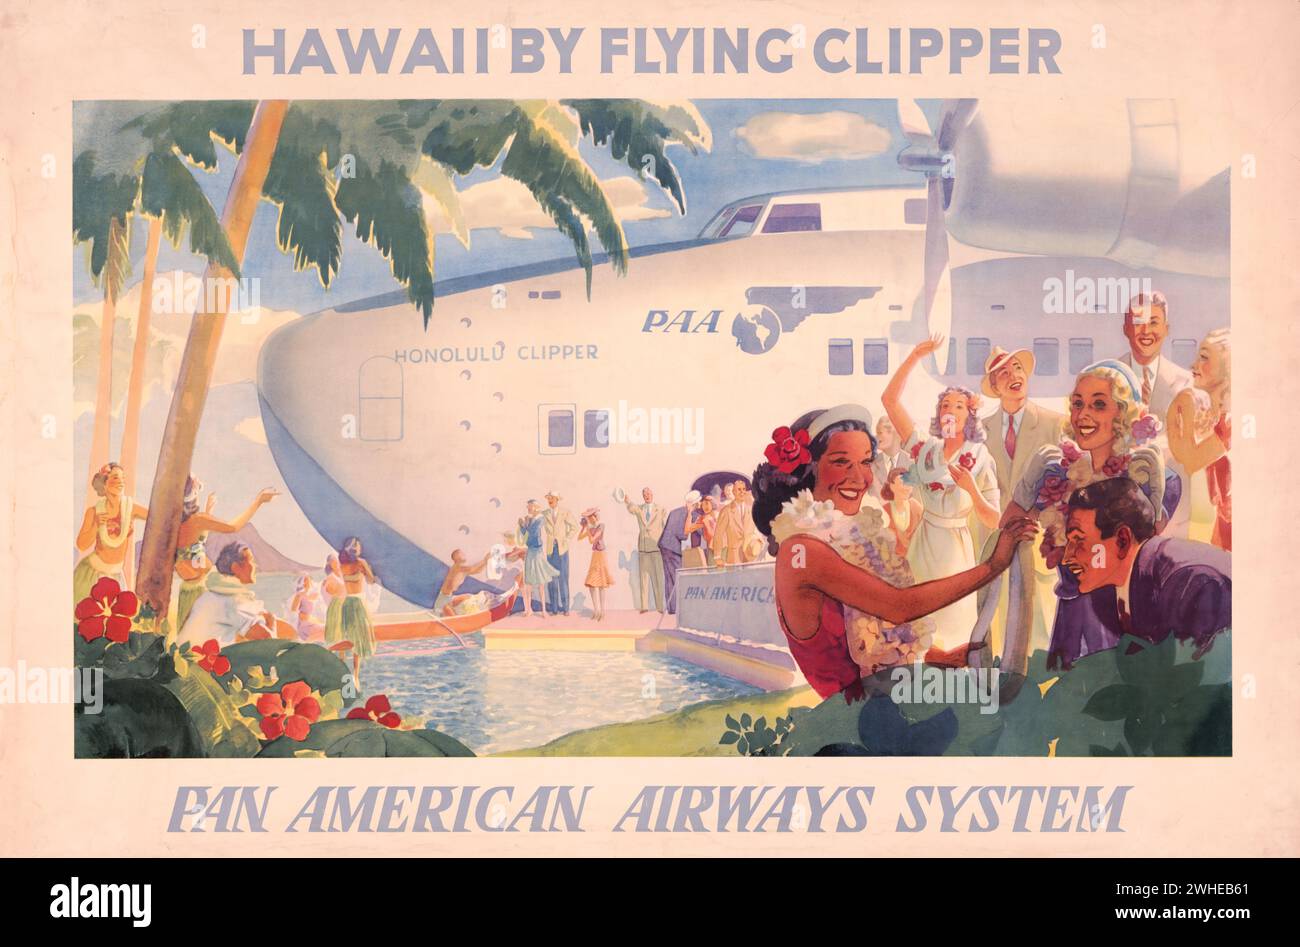 Affiche de voyage vintage de Pan American Airways - « Hawaii by Flying Clipper », mettant en vedette le Honolulu Clipper, un hydravion Boeing 314 Banque D'Images